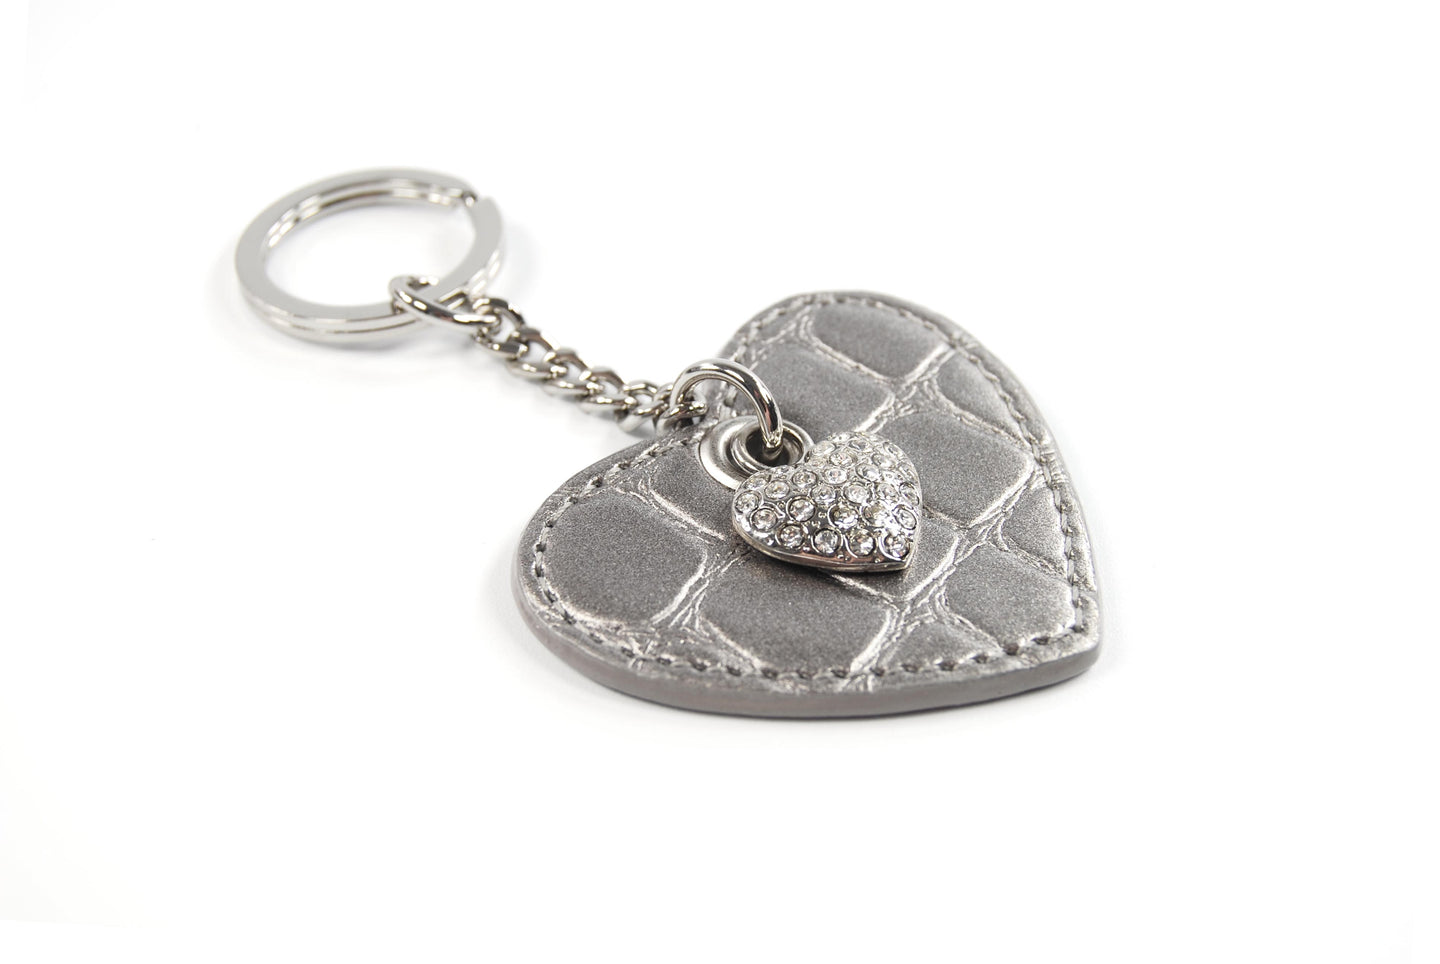 Heart Keychain - Schlüsselanhänger in Herzform mit Bling